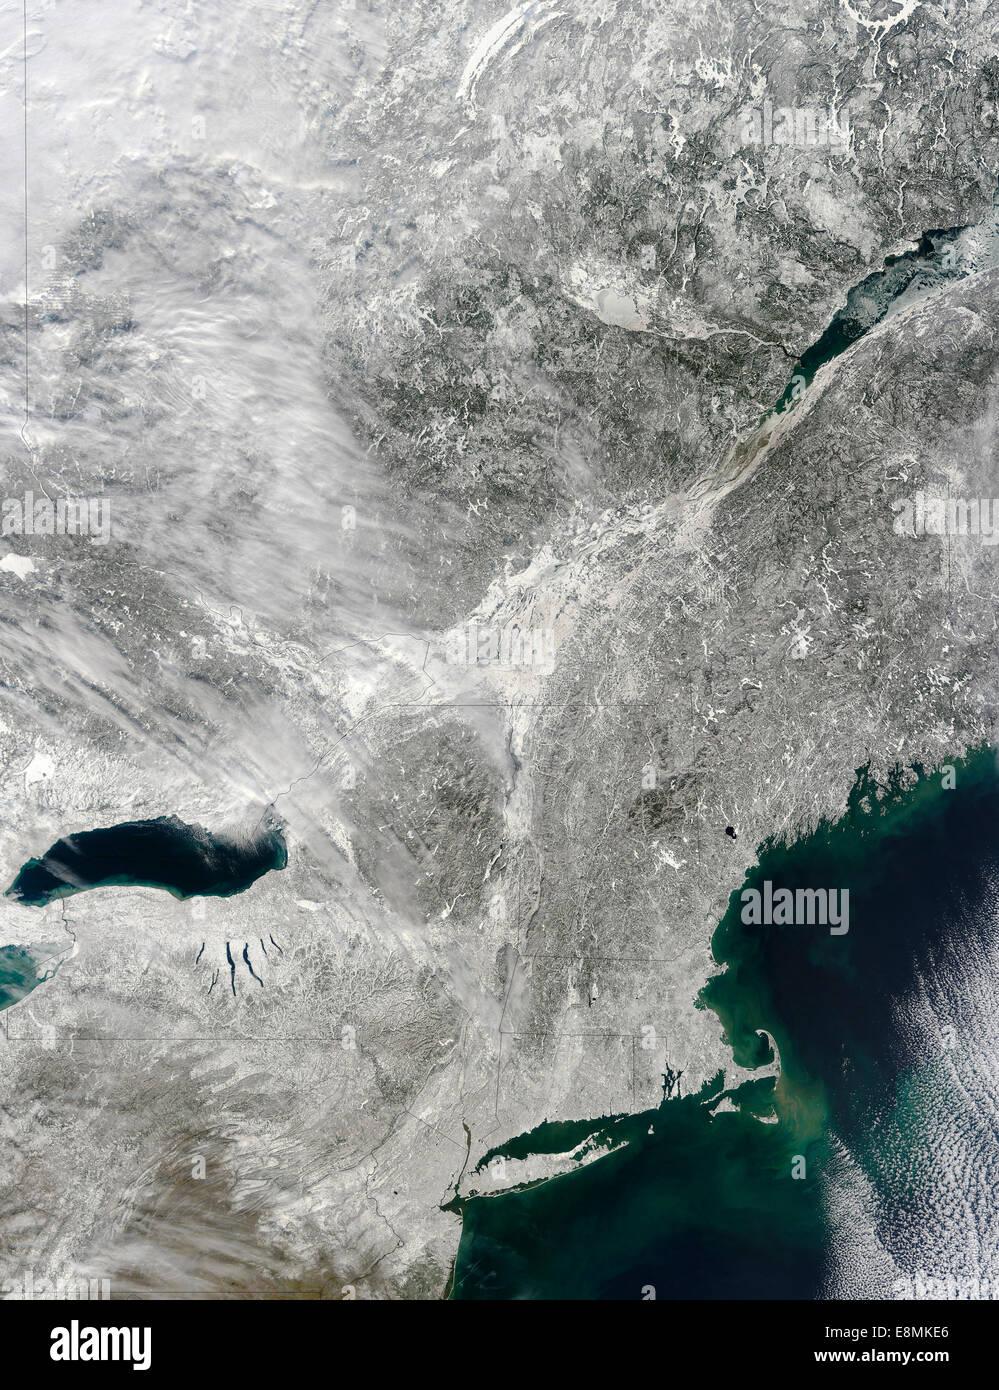 Febbraio 10, 2013 - vista satellitare del manto di neve che si estende dalla costa Est a Ovest oltre il Lago Ontario. Foto Stock